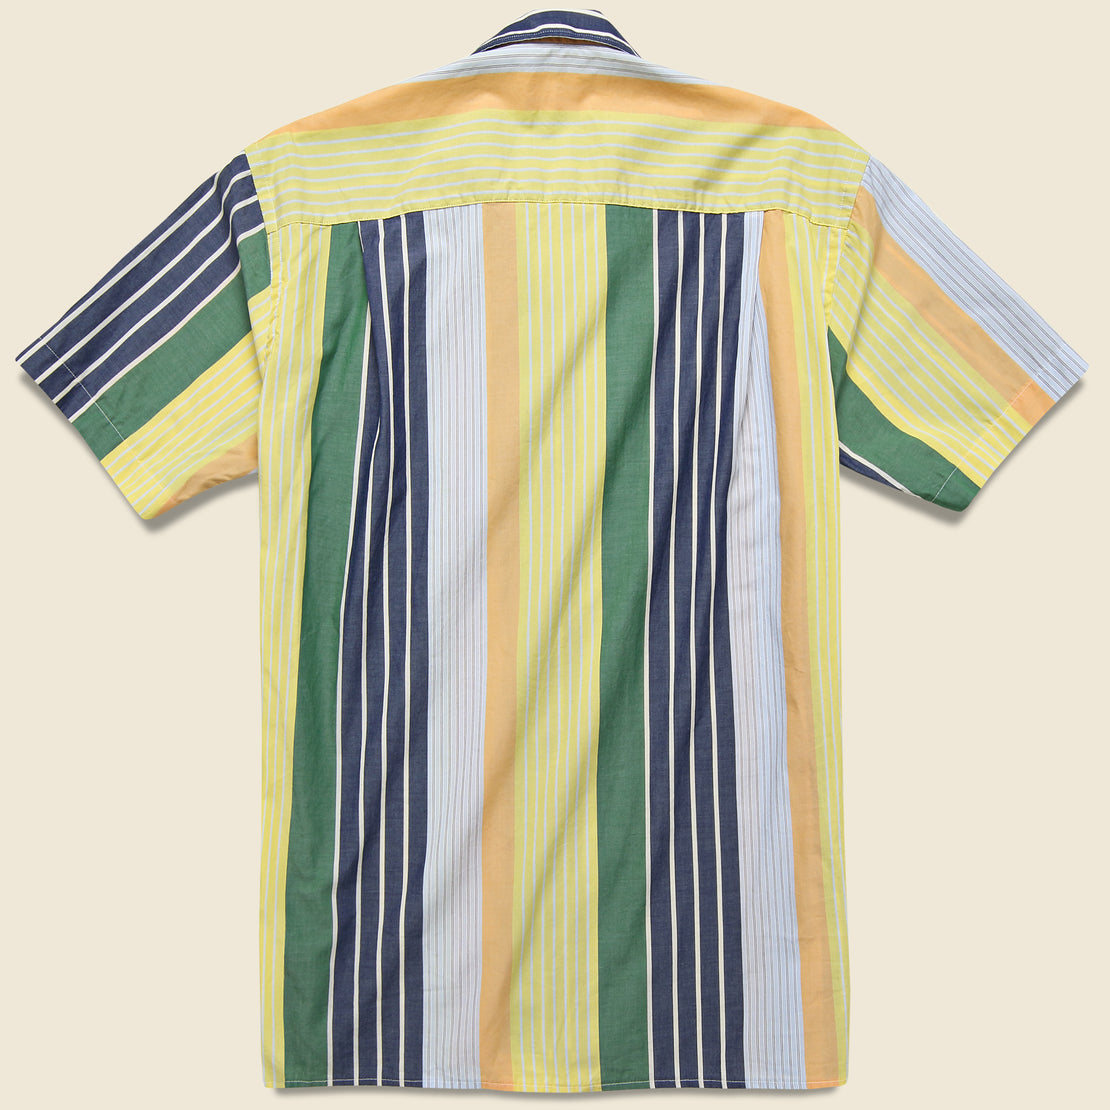 Awning Stripe Camp Shirt - Multi